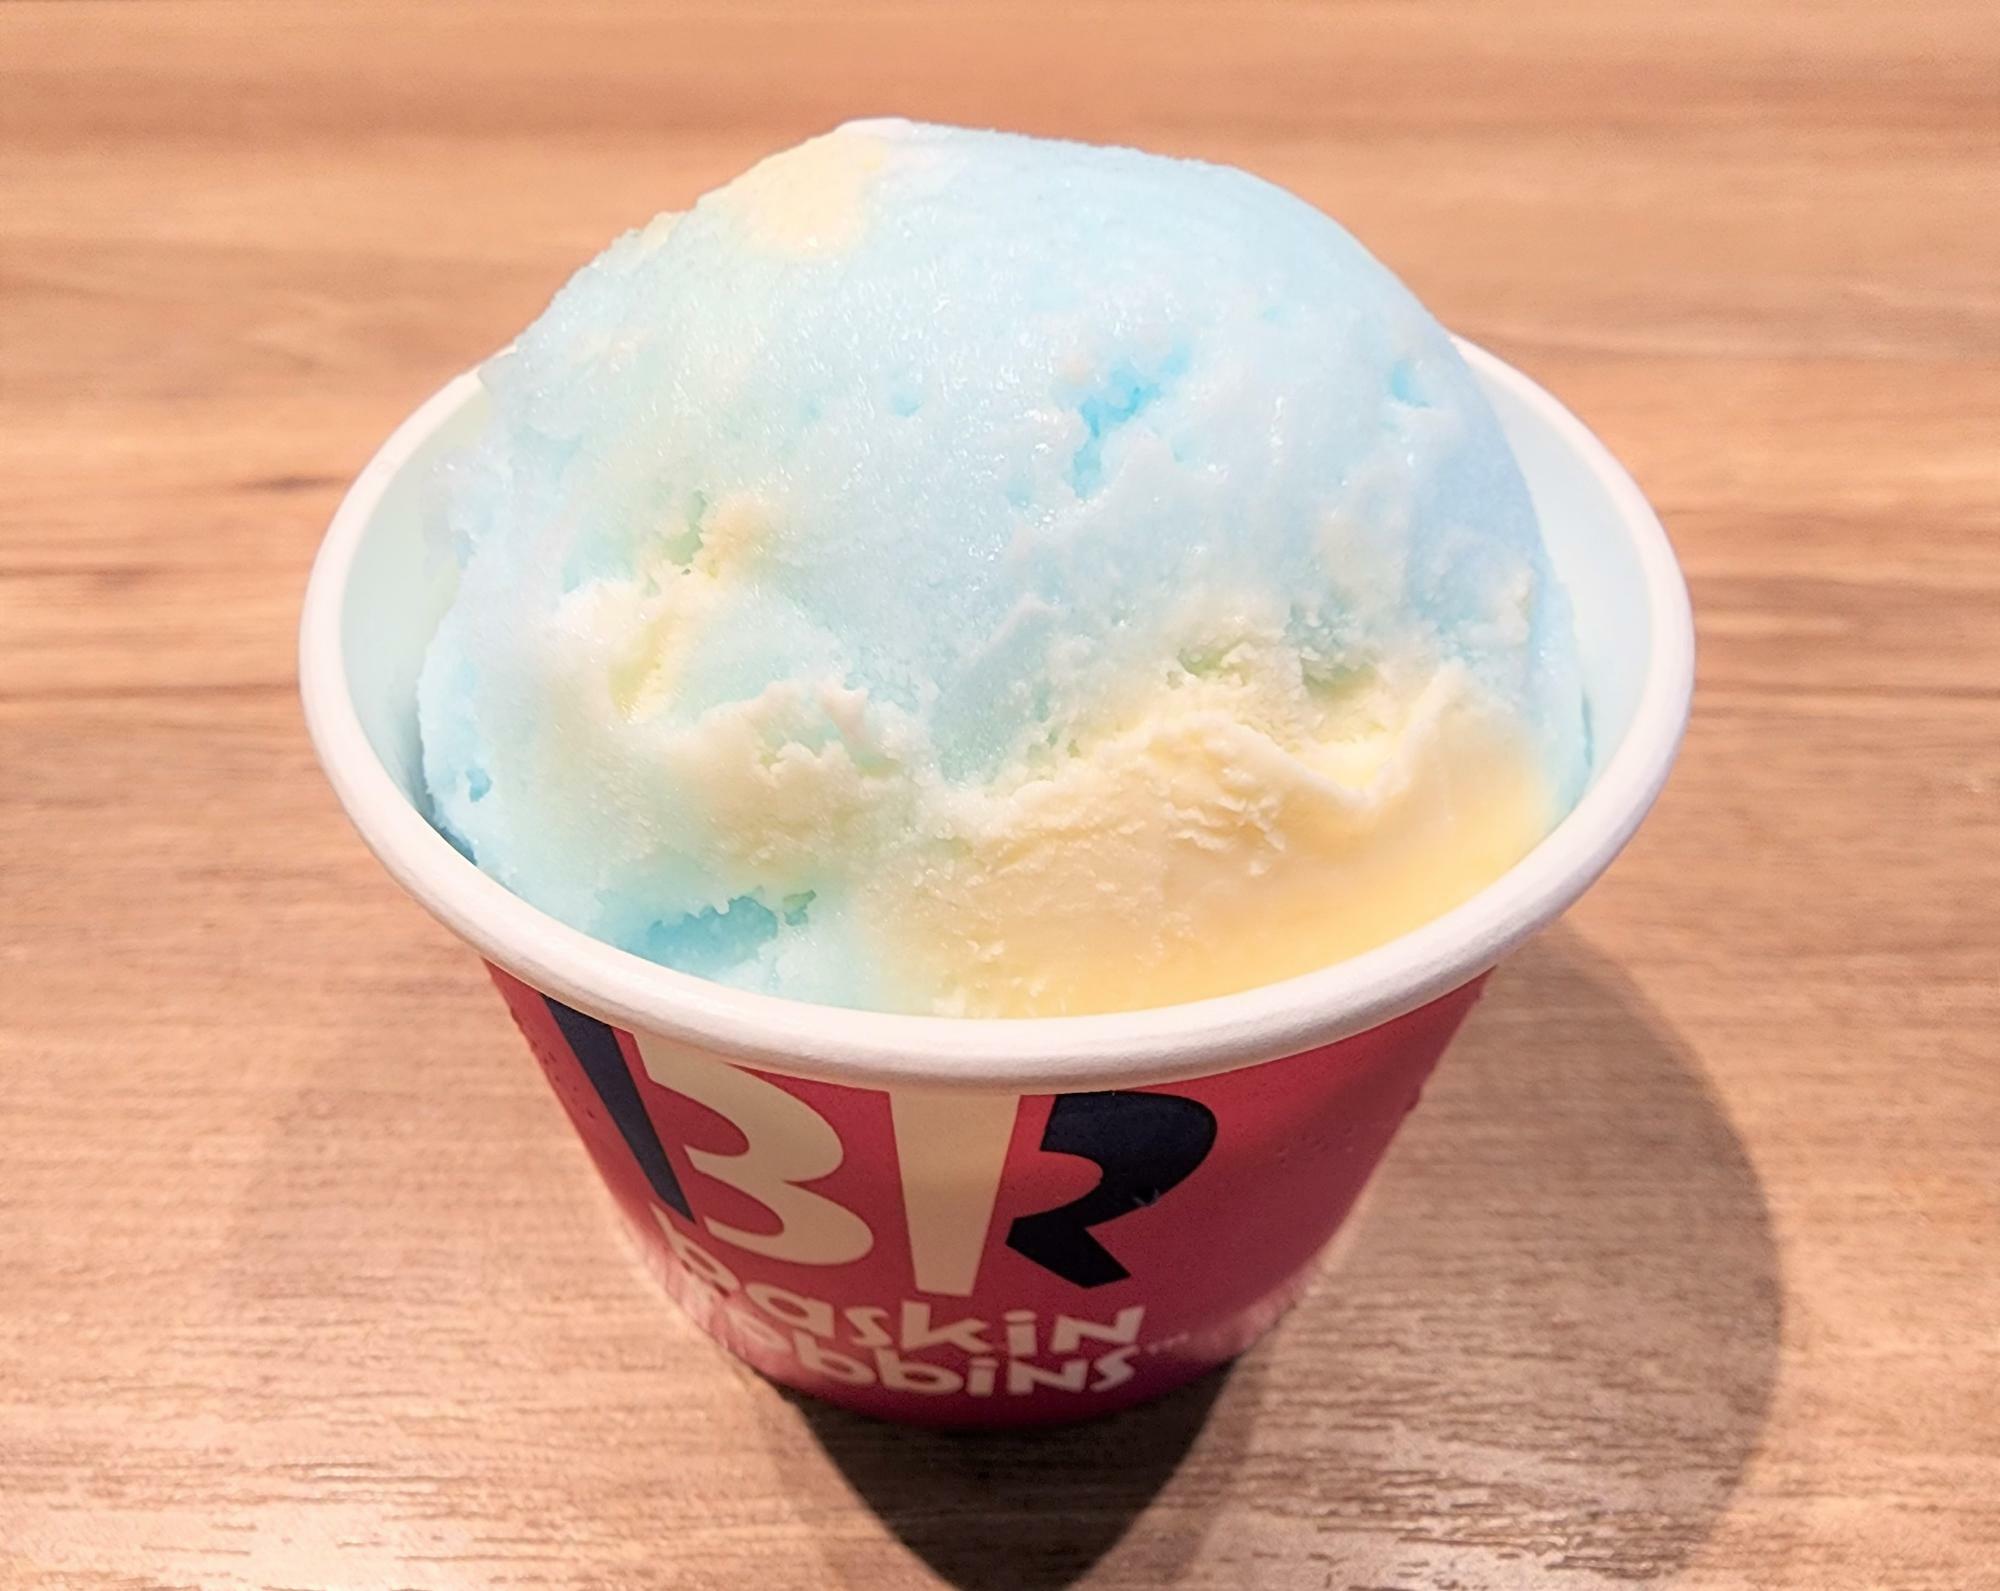 リニューアルオープンした「サーティワンアイスクリーム」イオンモール徳島店で購入したアイスクリーム。